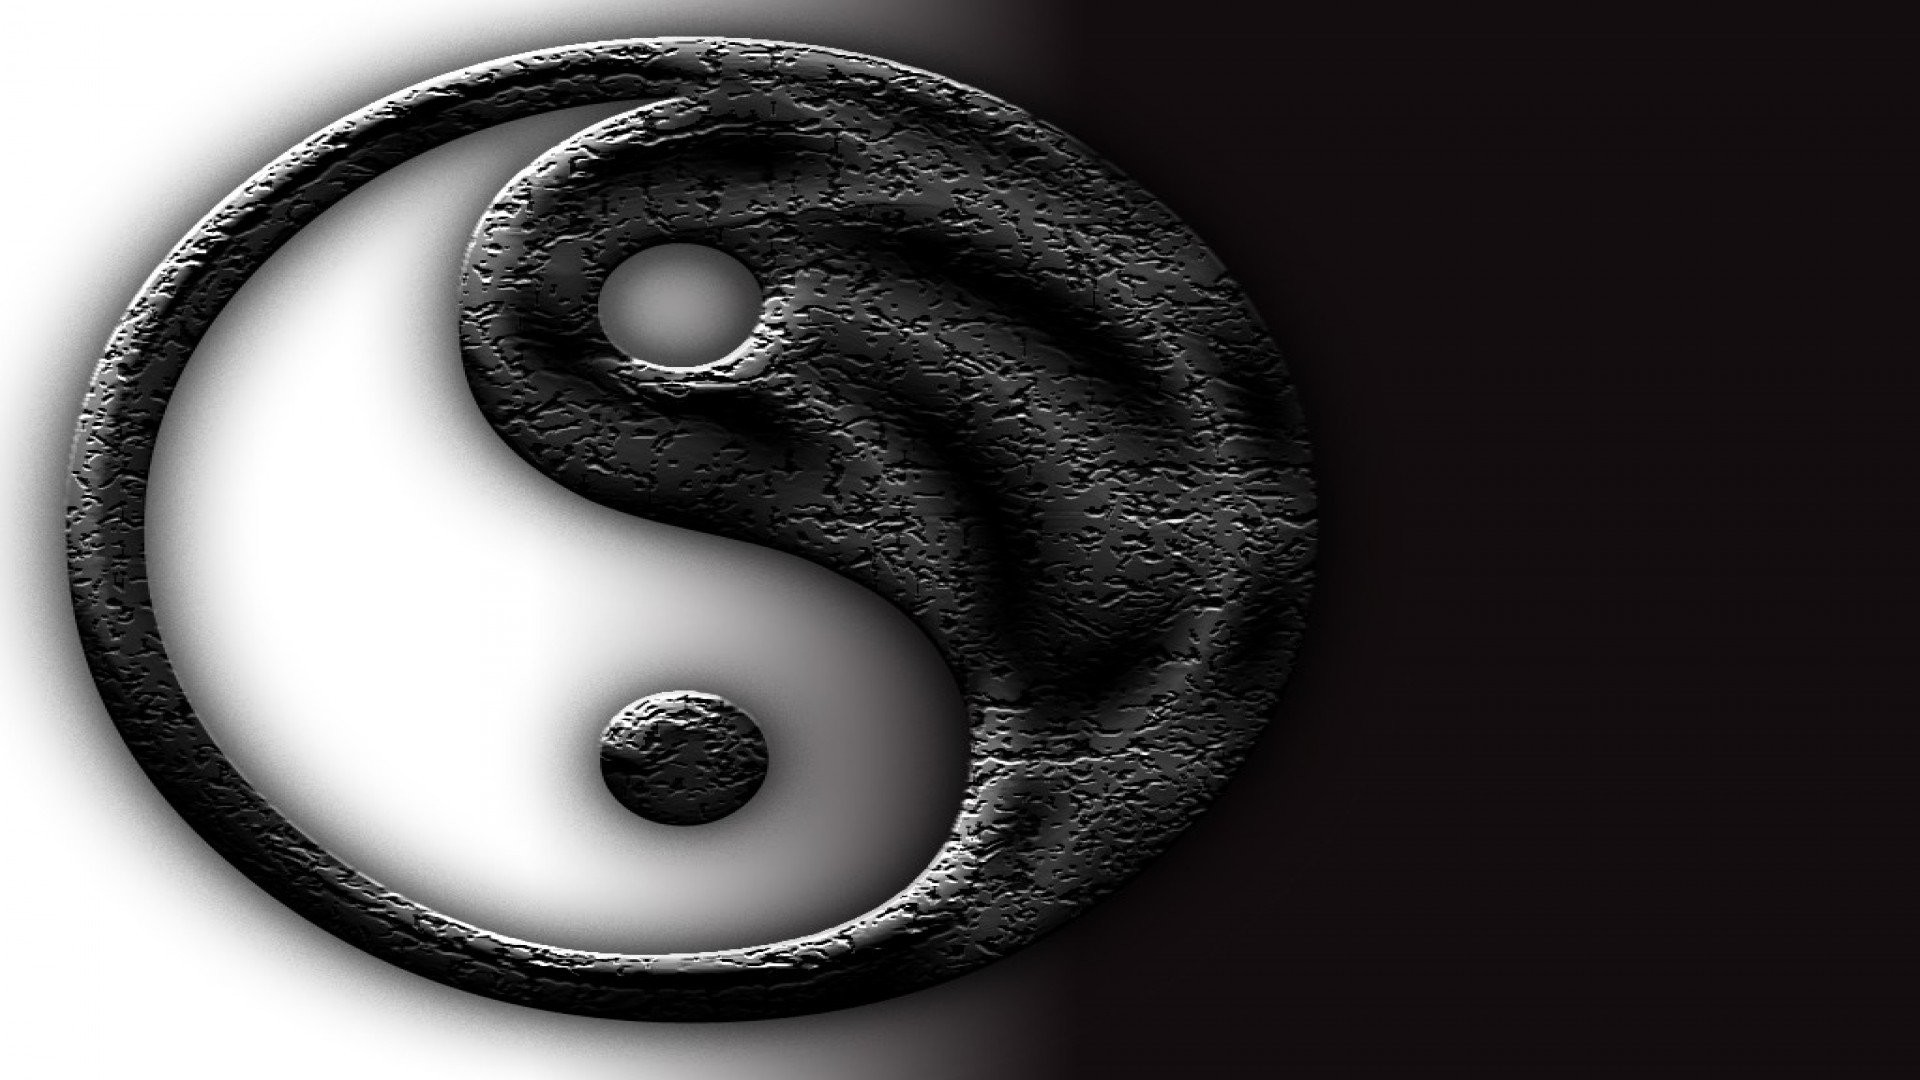 koi fish yin and yang, dragon wallpapers download